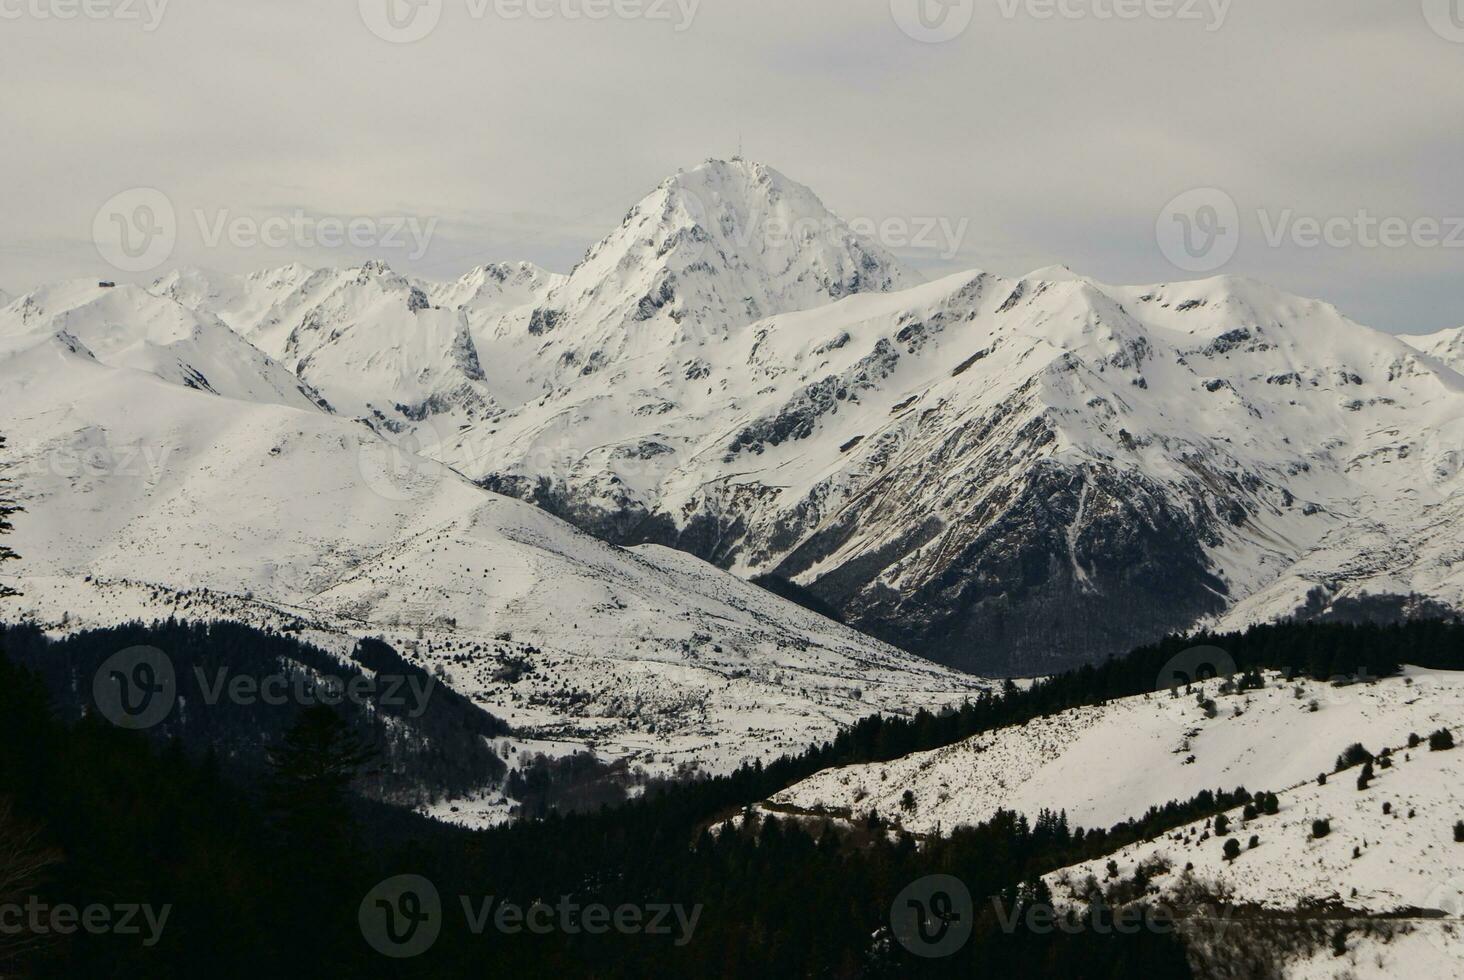 panoramautsikt, södra sidan, av massivet av maladeta i pyrenéerna foto